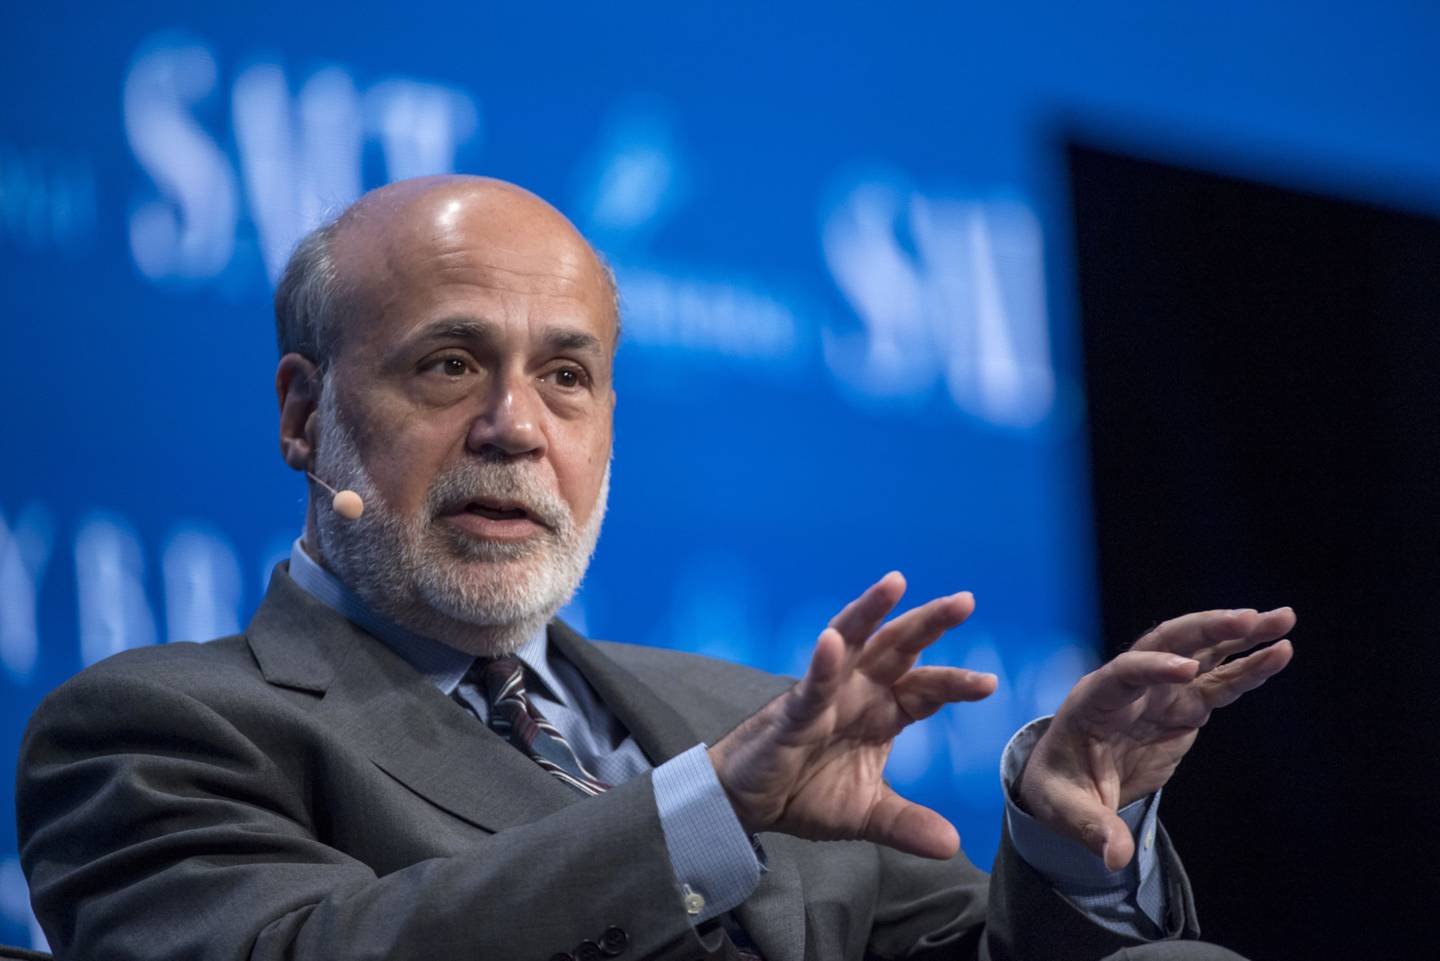 Ben Bernanke. Photographer: David Paul Morris/Bloomberg